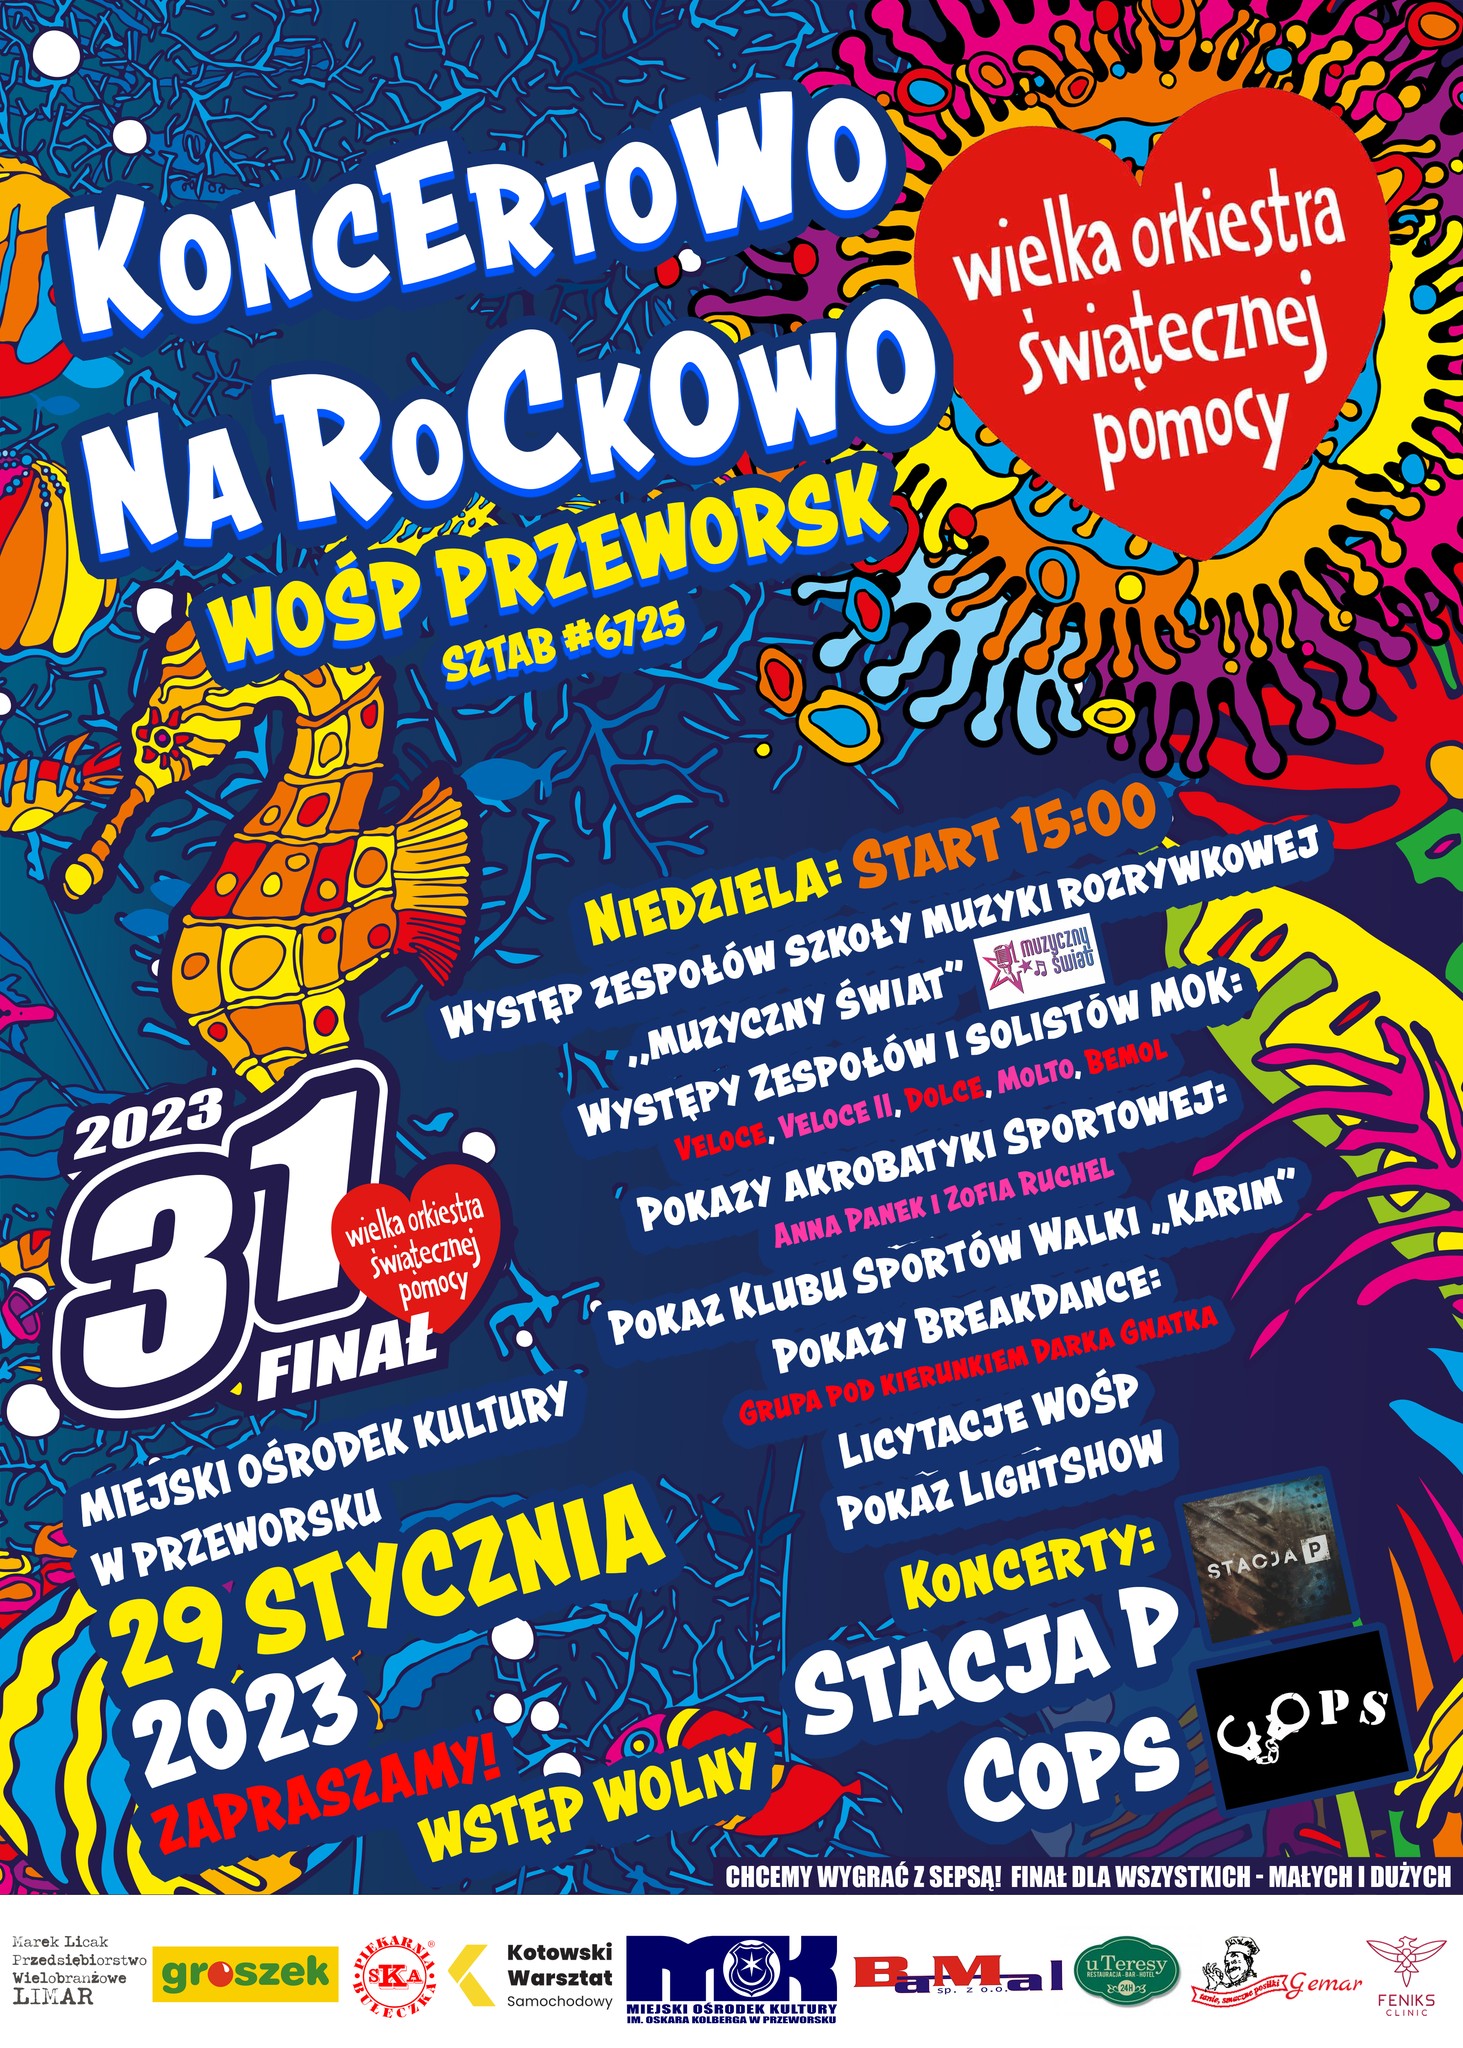 Koncertowo Na Rockowo – WOŚP 2023 Przeworsk